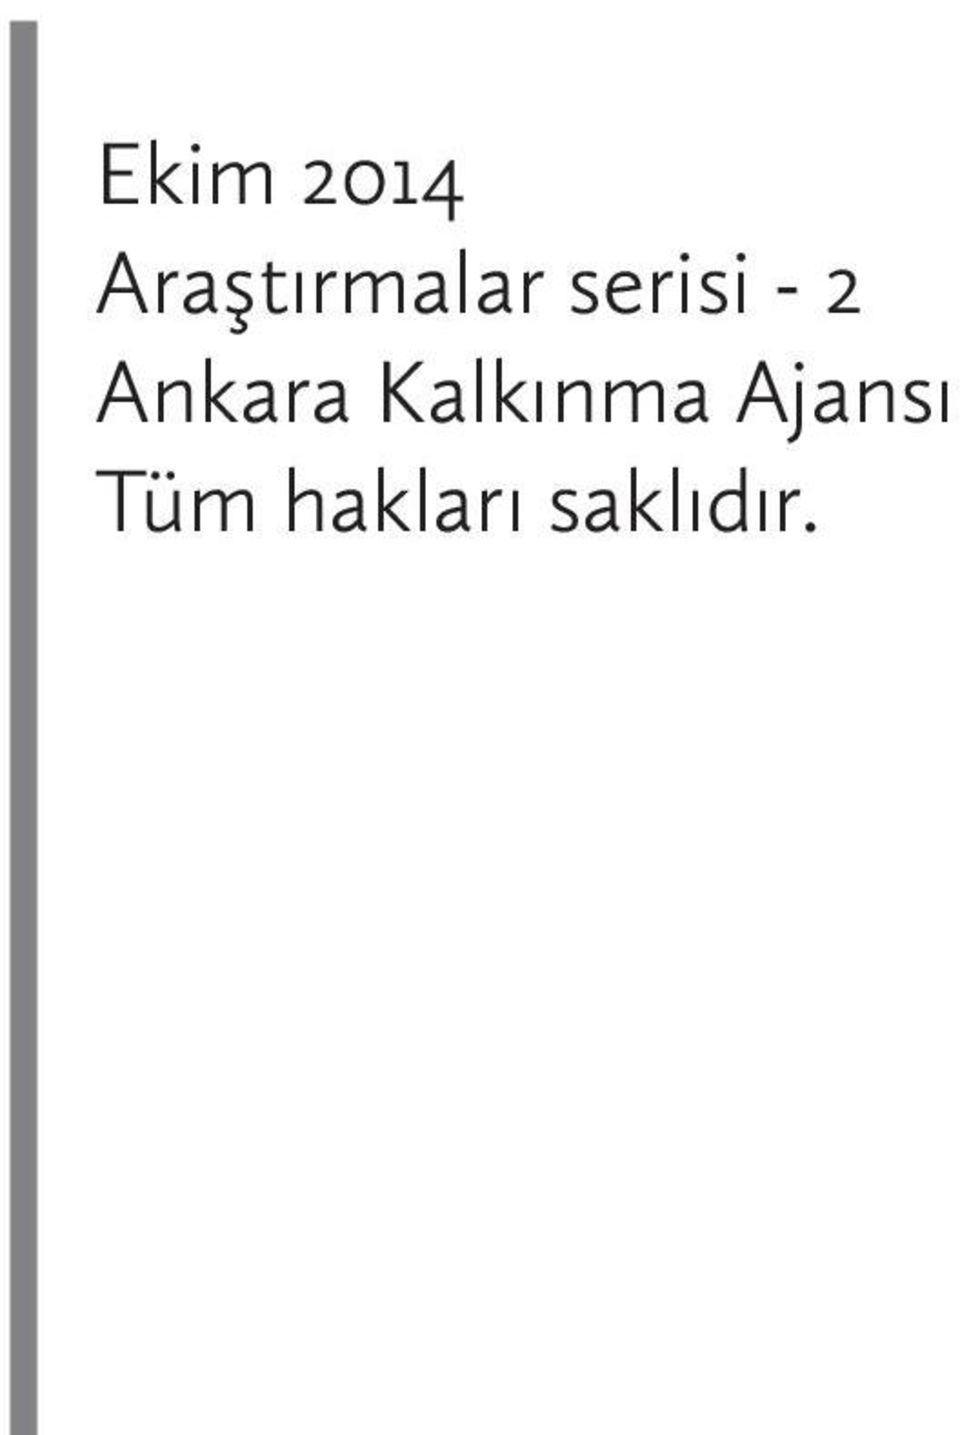 - 2 Ankara Kalkınma